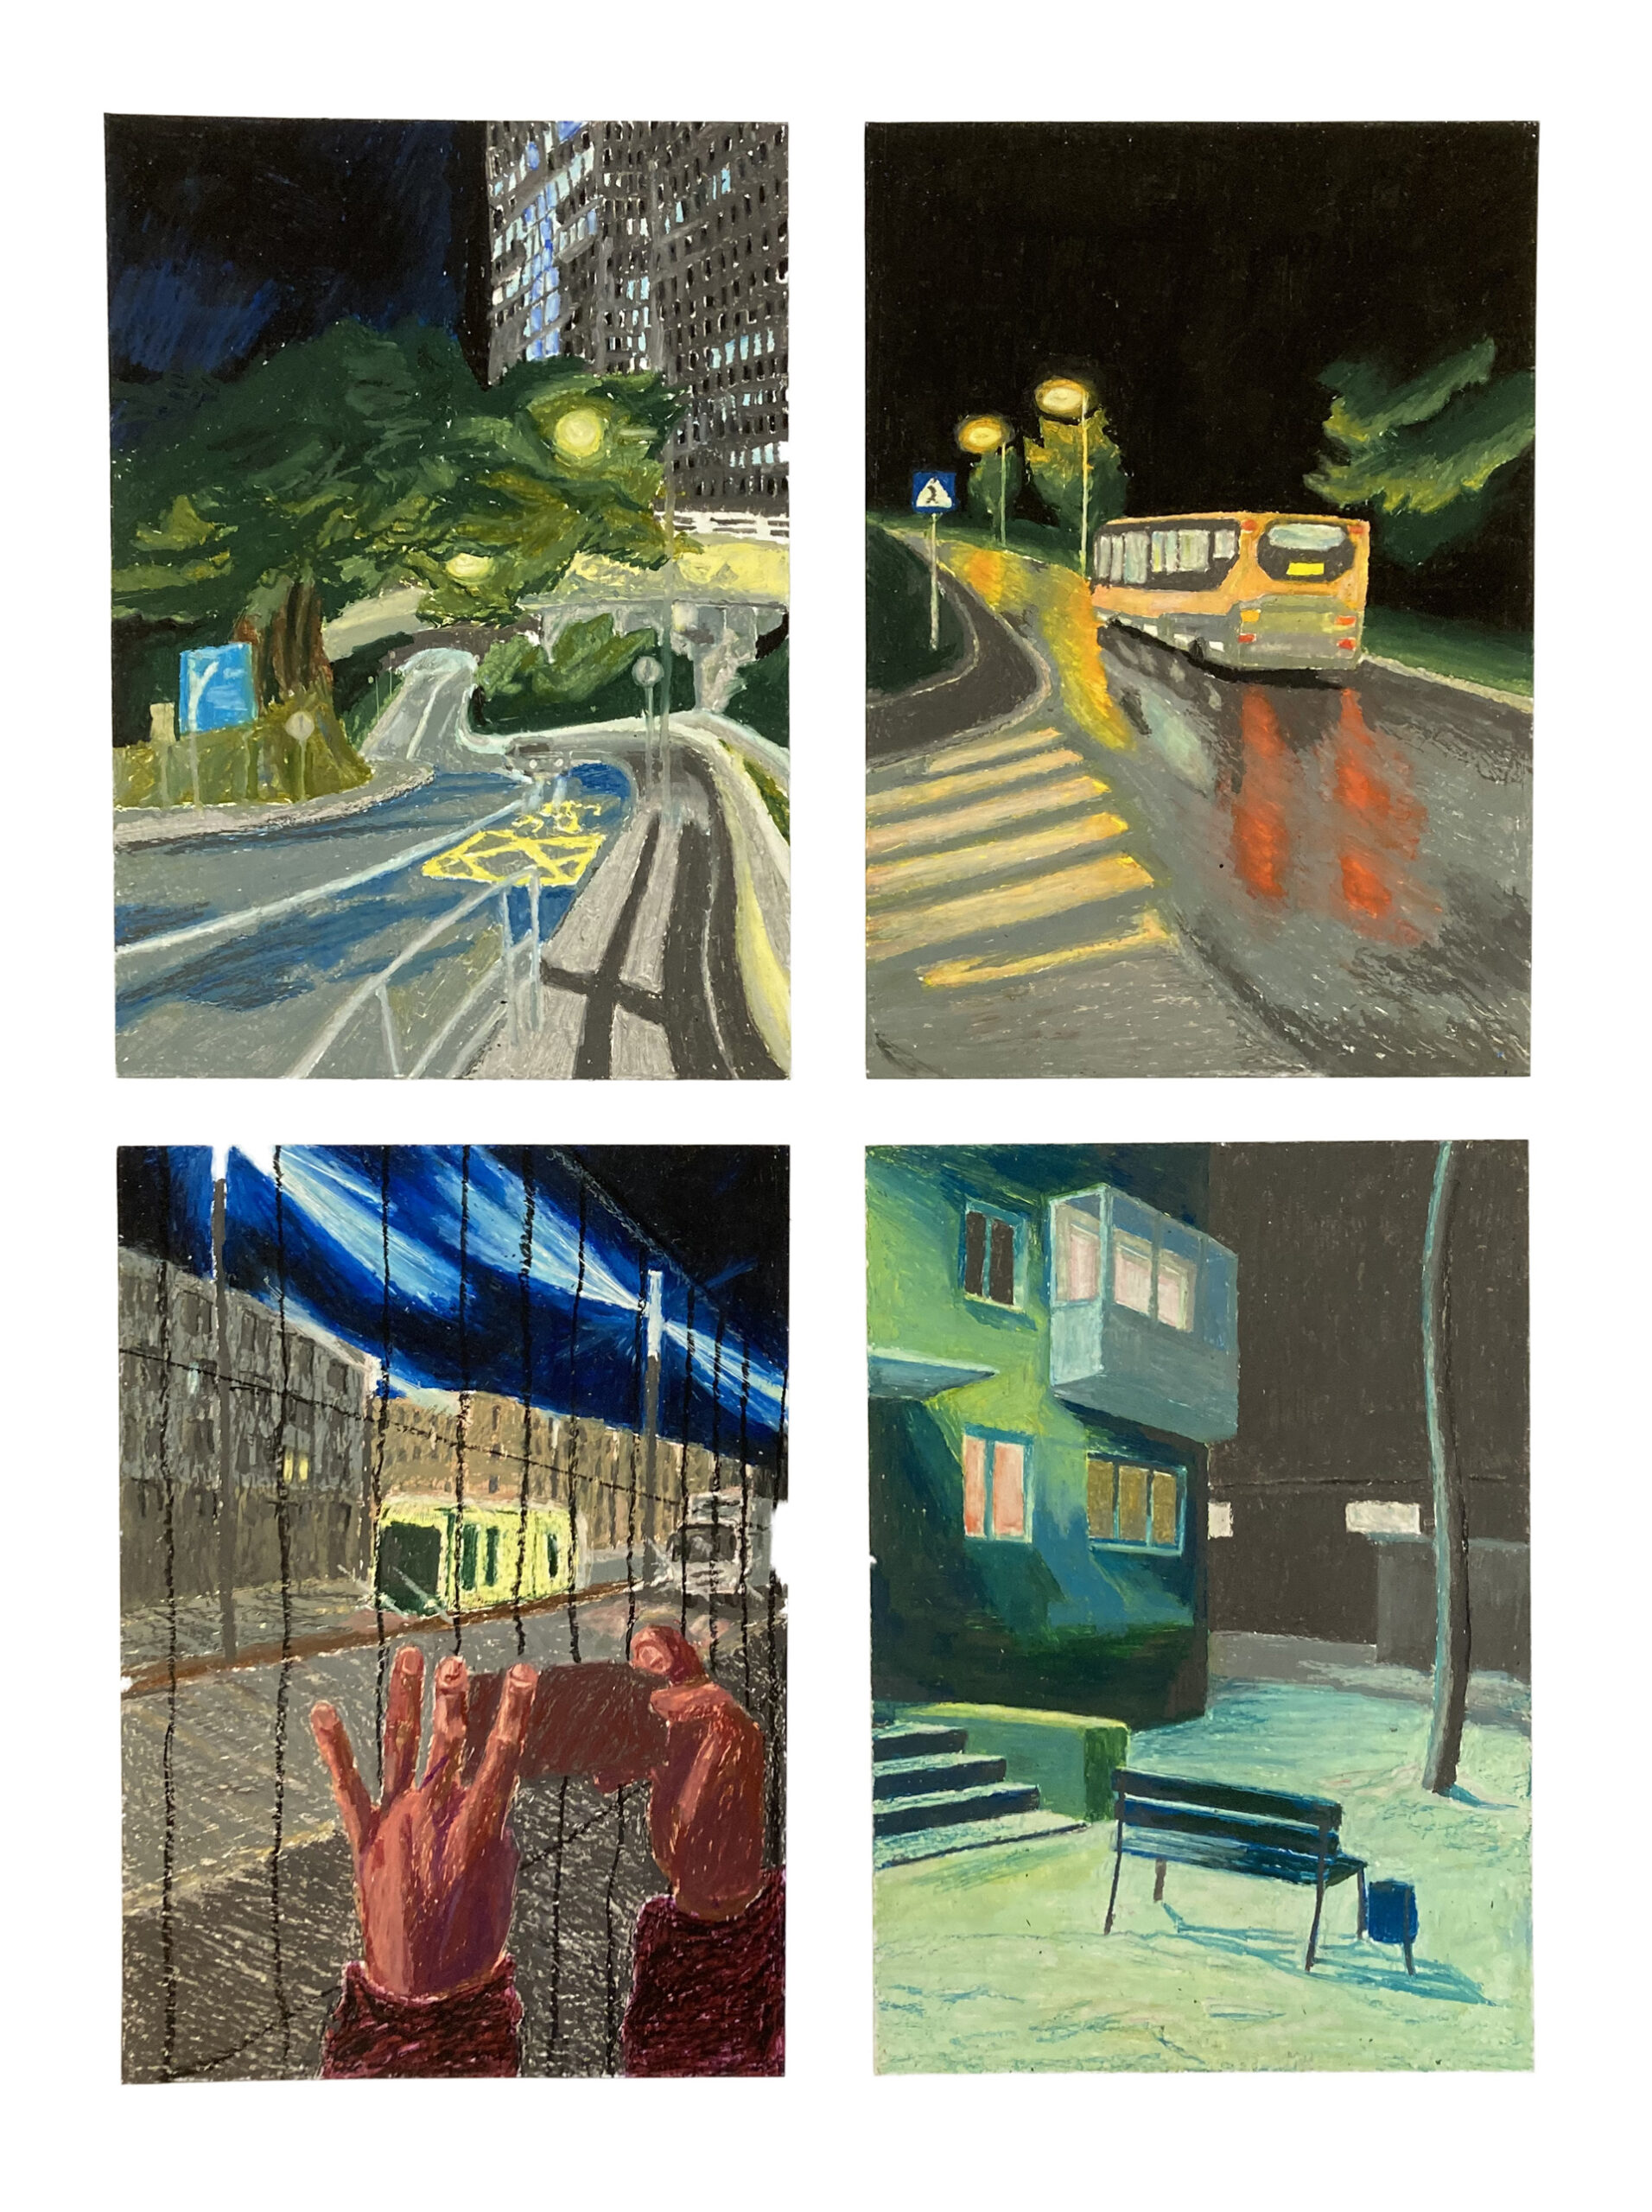 Cztery miejskie nokturny, których bohaterami są opustoszałe ulice, domy, pojazdy. Rysunki wykonane są pastelami olejnymi, analizują zagadnienia związane ze światłem i kolorem.